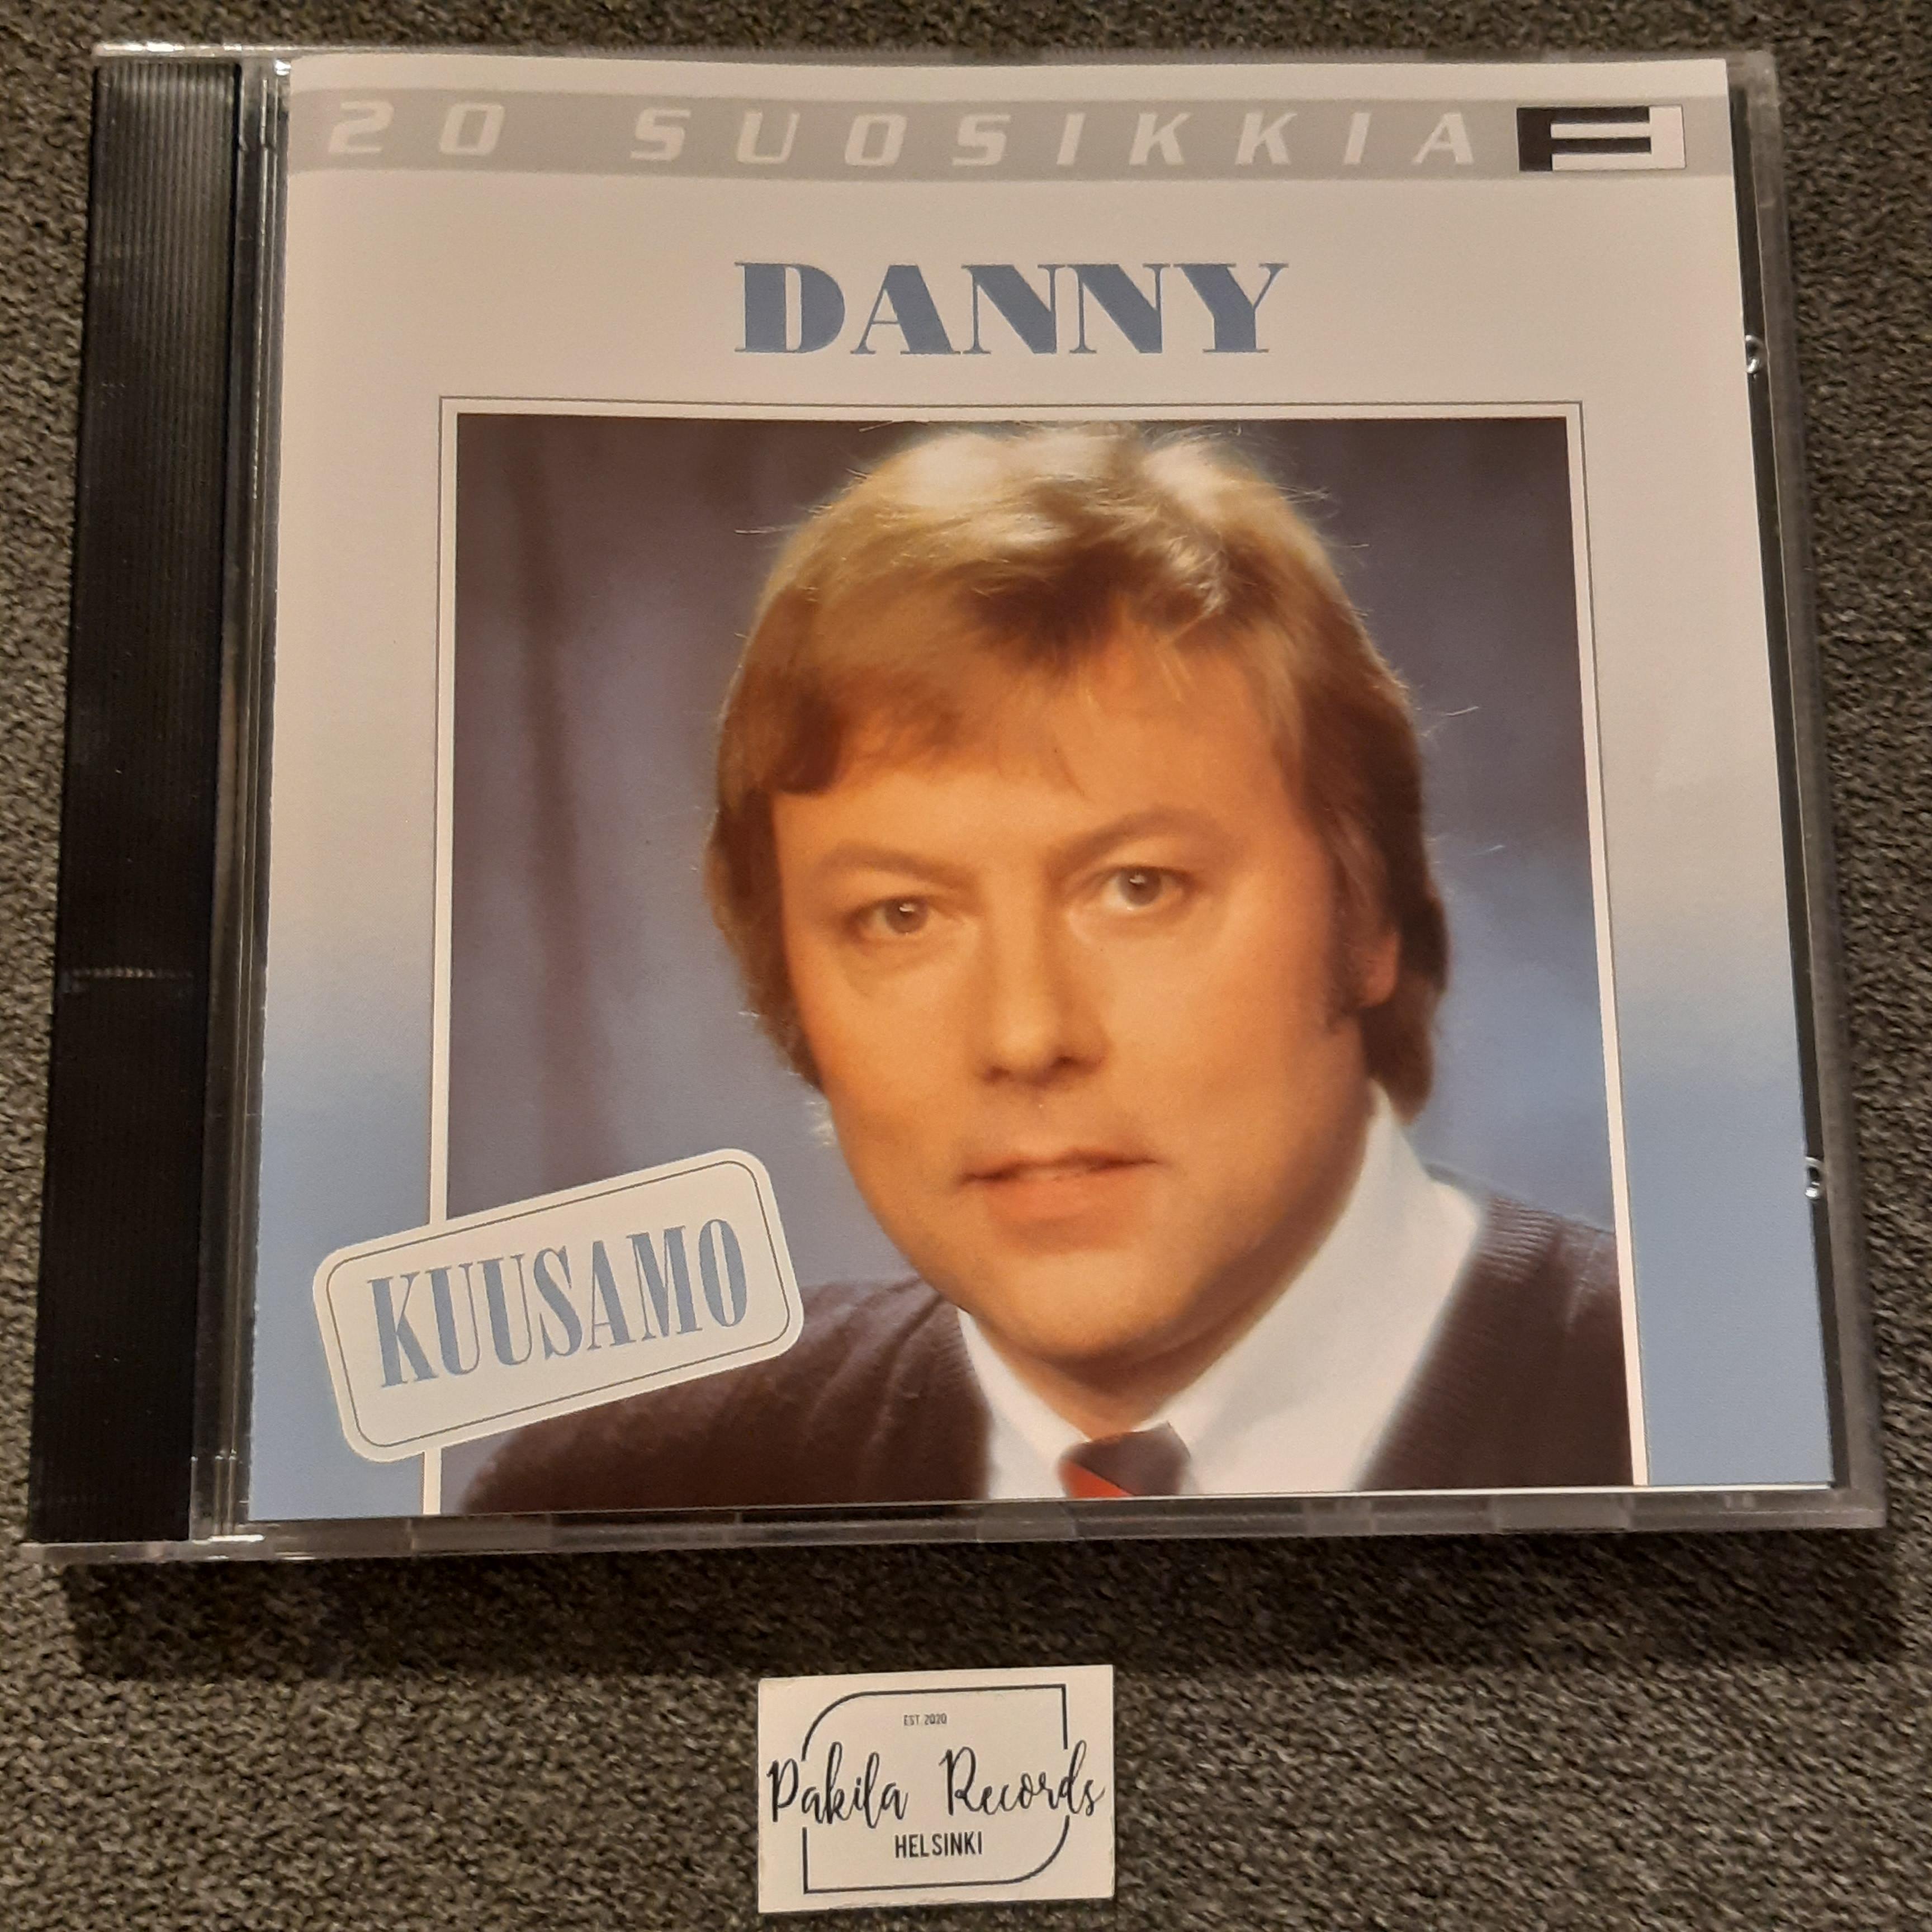 Danny - 20 suosikkia, Kuusamo - CD (käytetty)